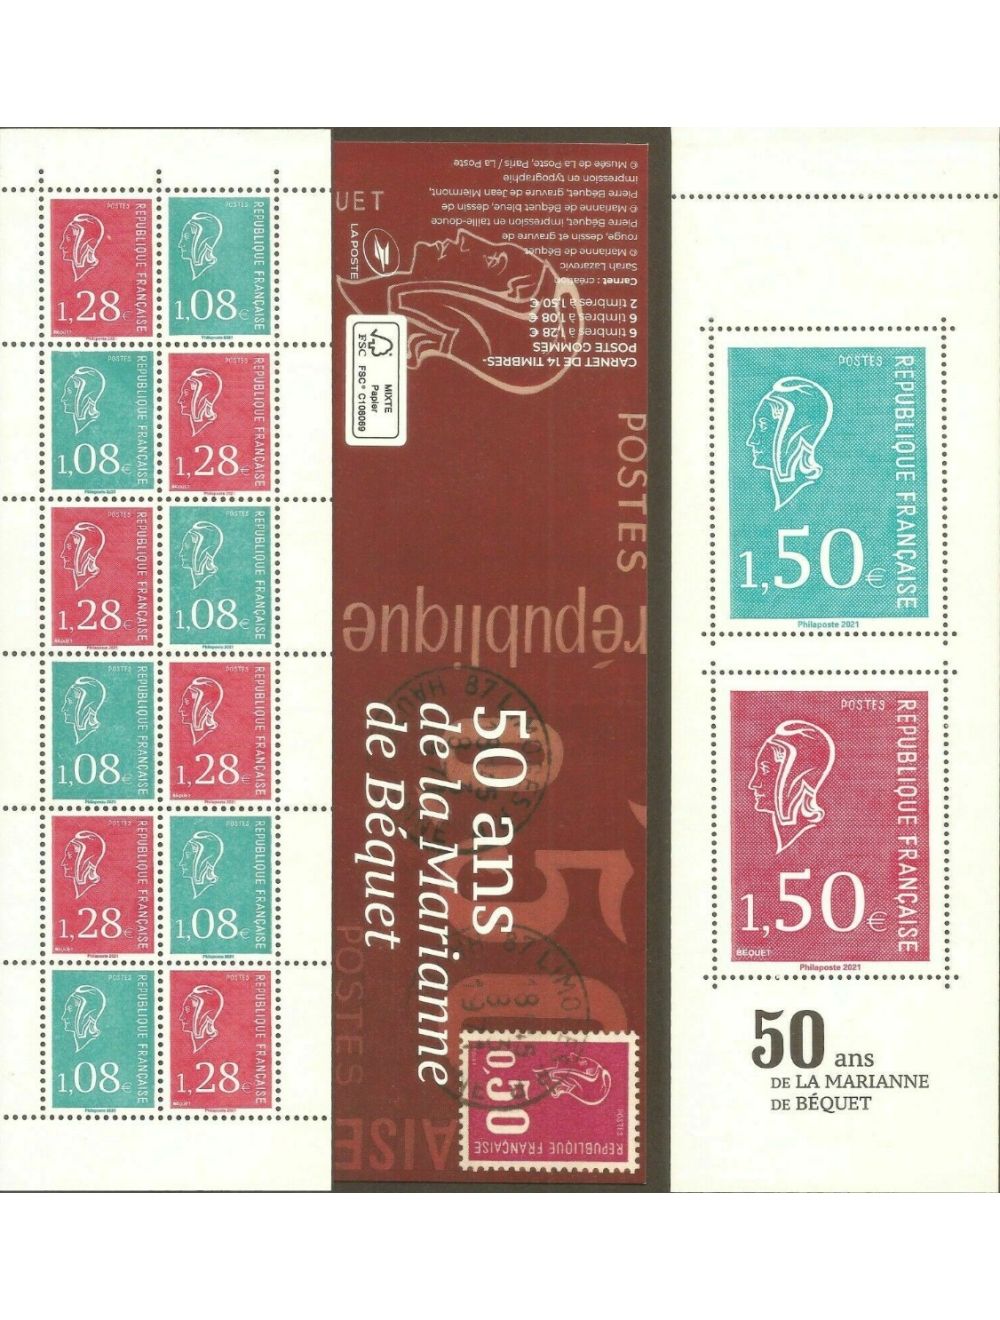 Mon carnet de timbres féérique